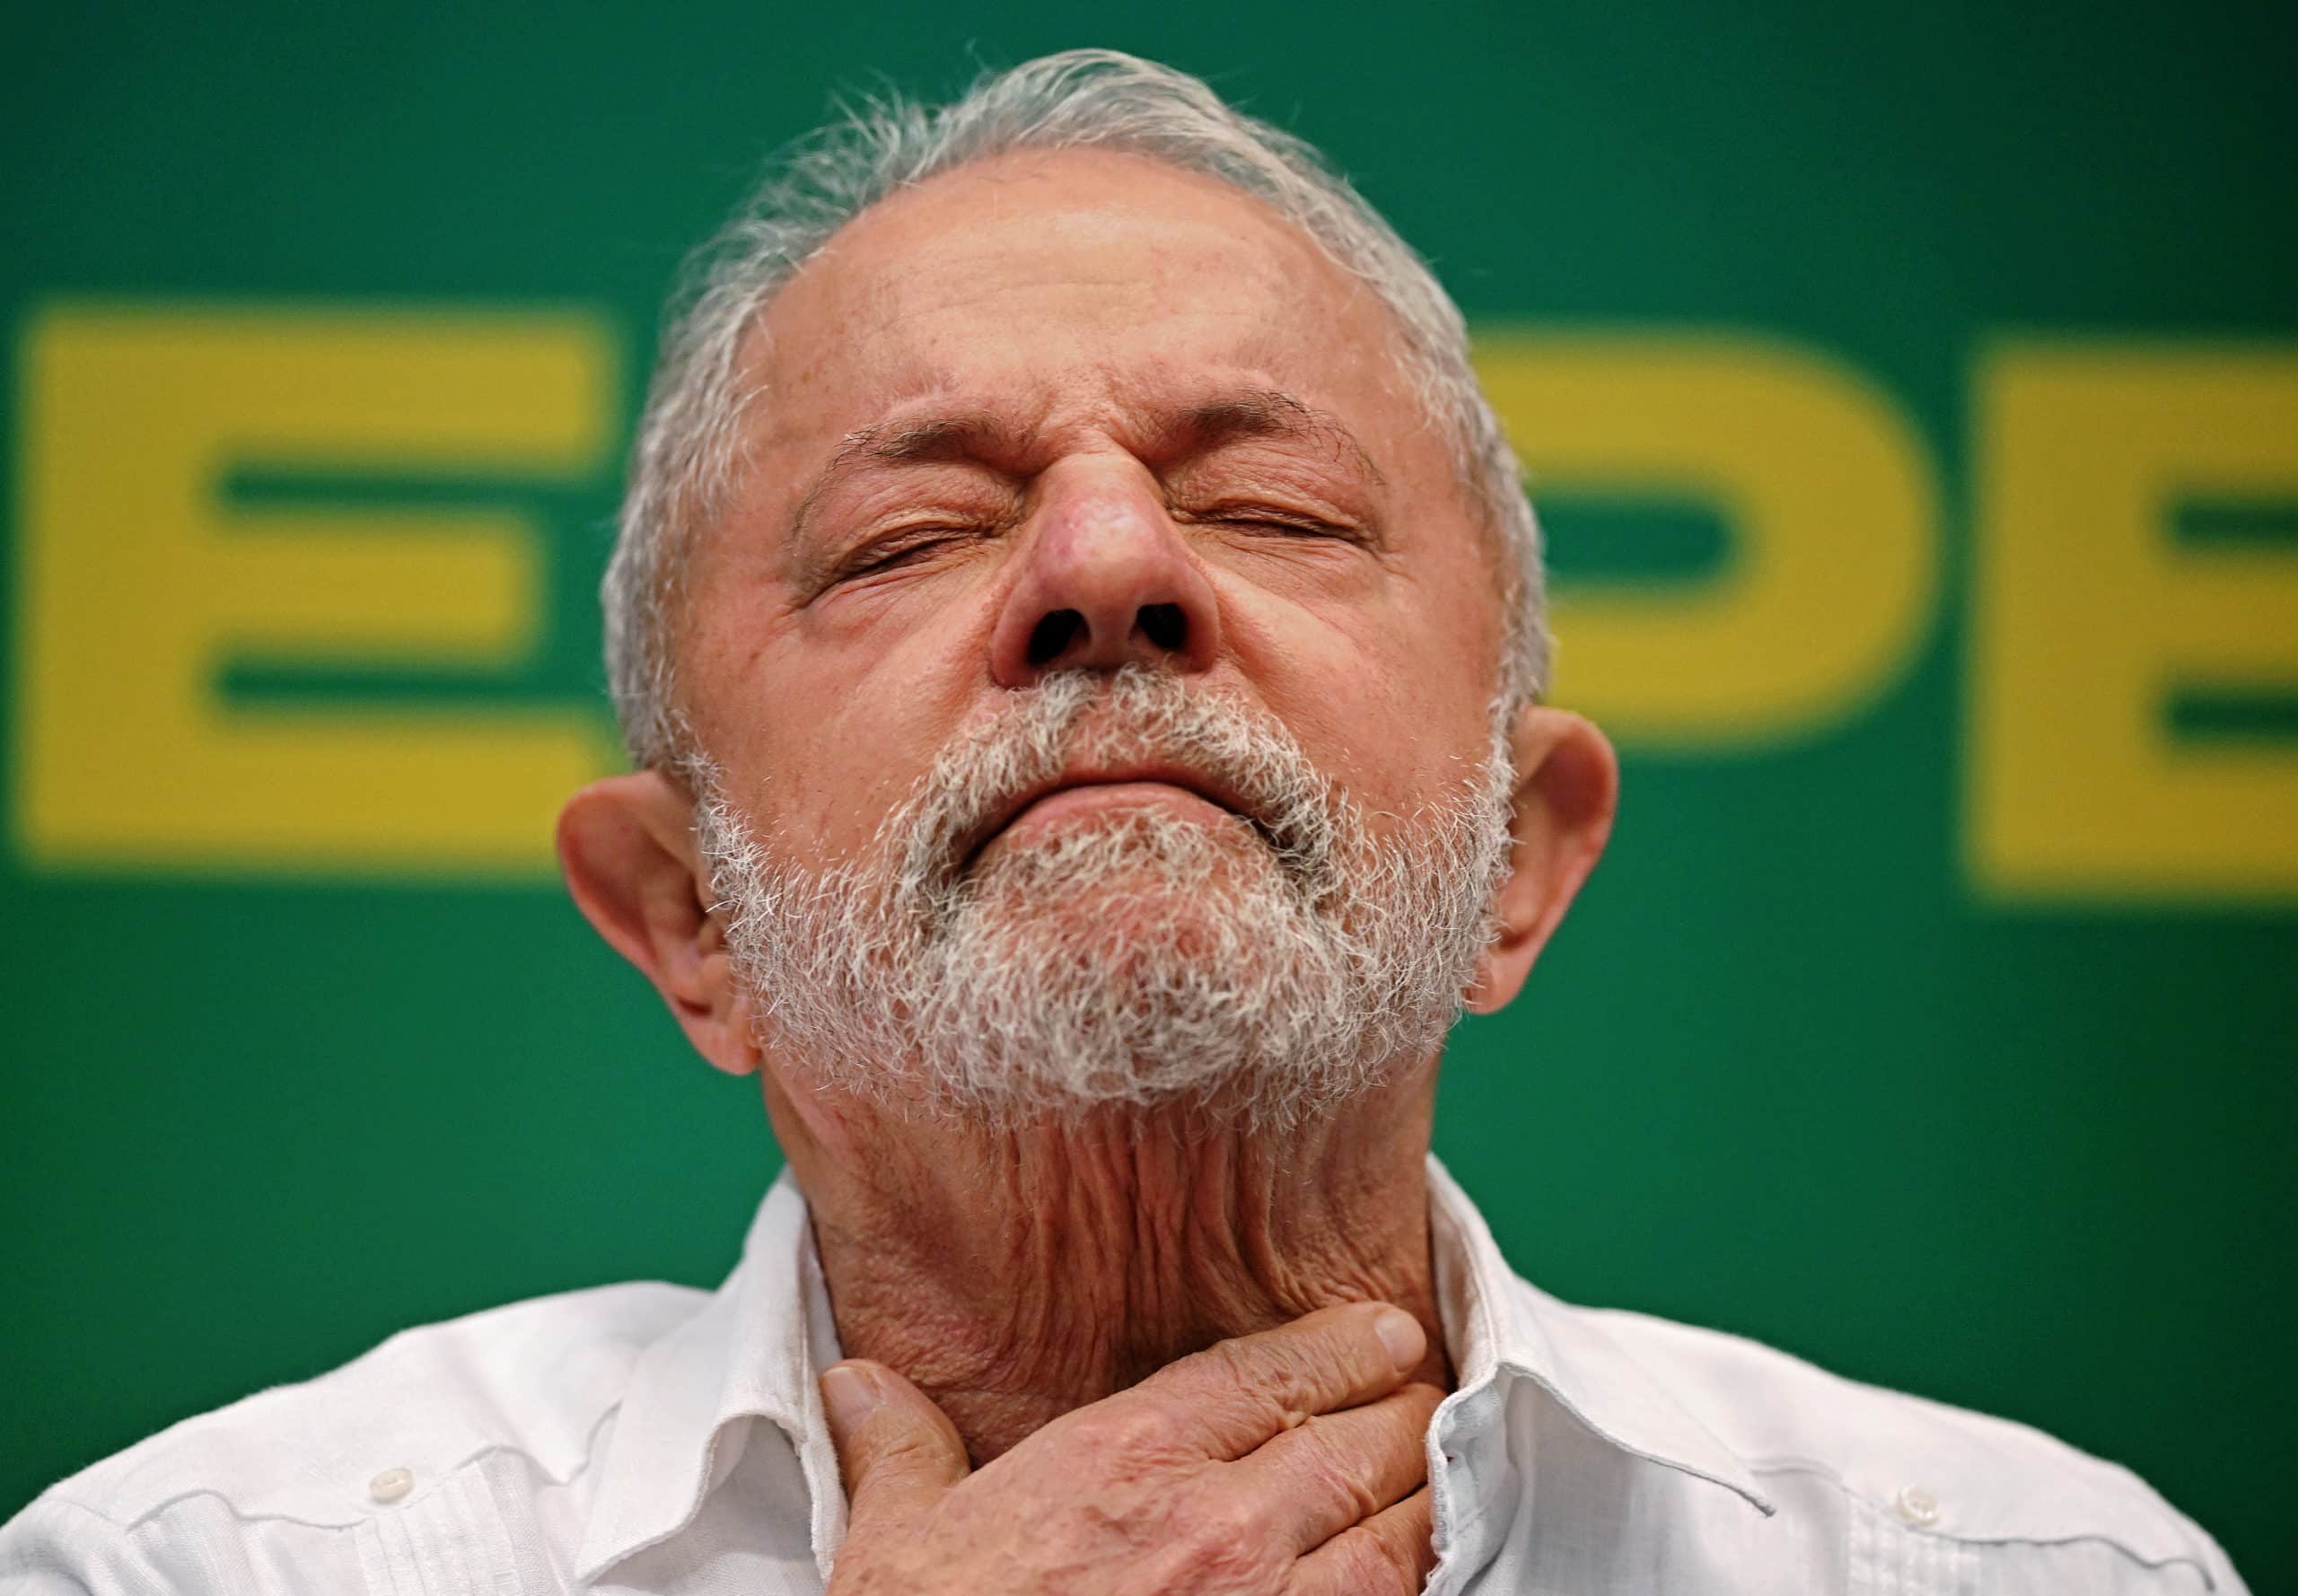 Presidente de Brasil, Lula da Silva, obligado a frenar agenda por operación de cadera